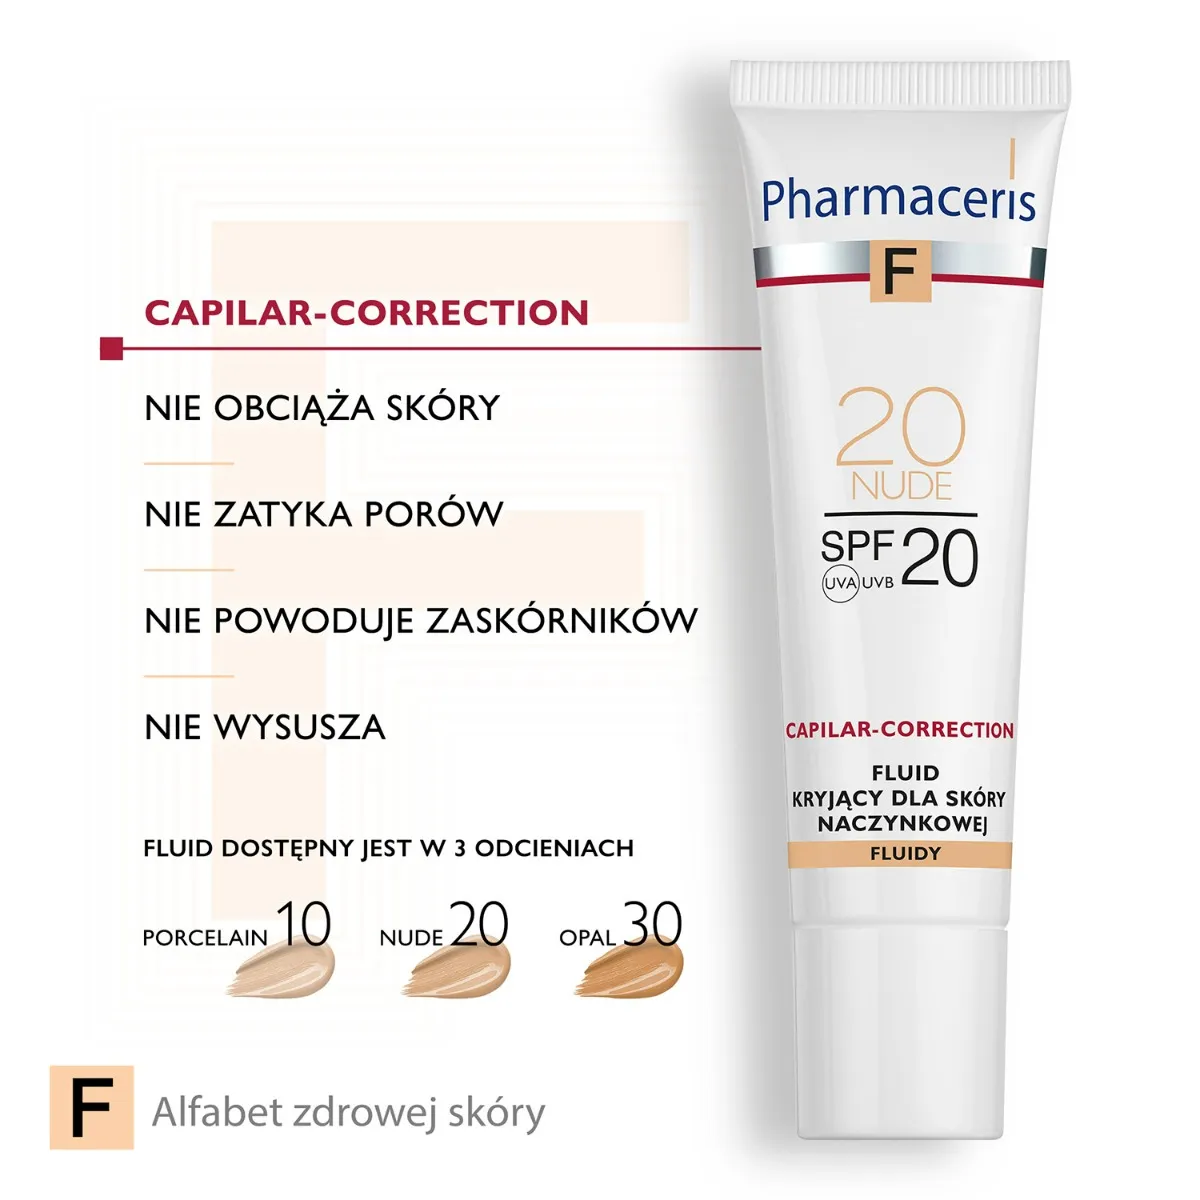 Pharmaceris F Capilar-Correction, fluid kryjący do skóry naczynkowej 20 Nude SPF 20, 30 ml 